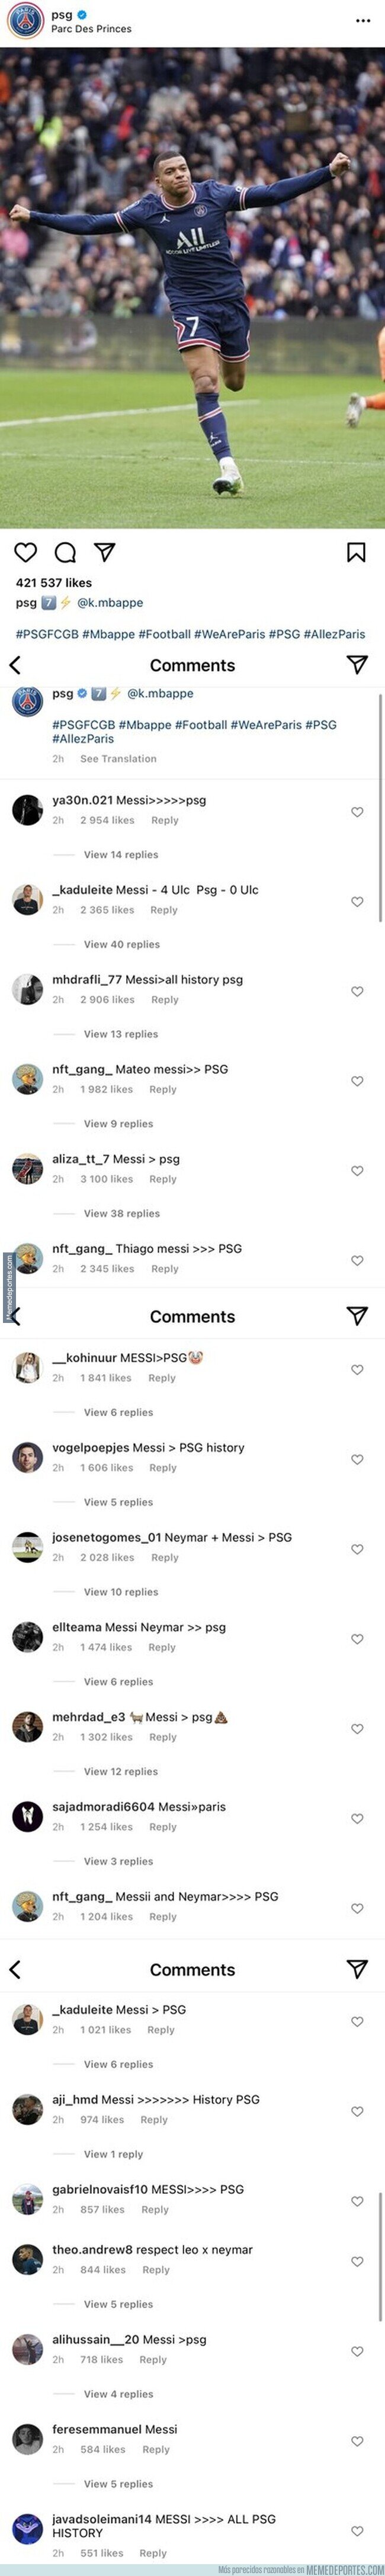 1157105 - Las redes sociales del PSG tras los abucheos a Messi por parte de aficionados del equipo parisino